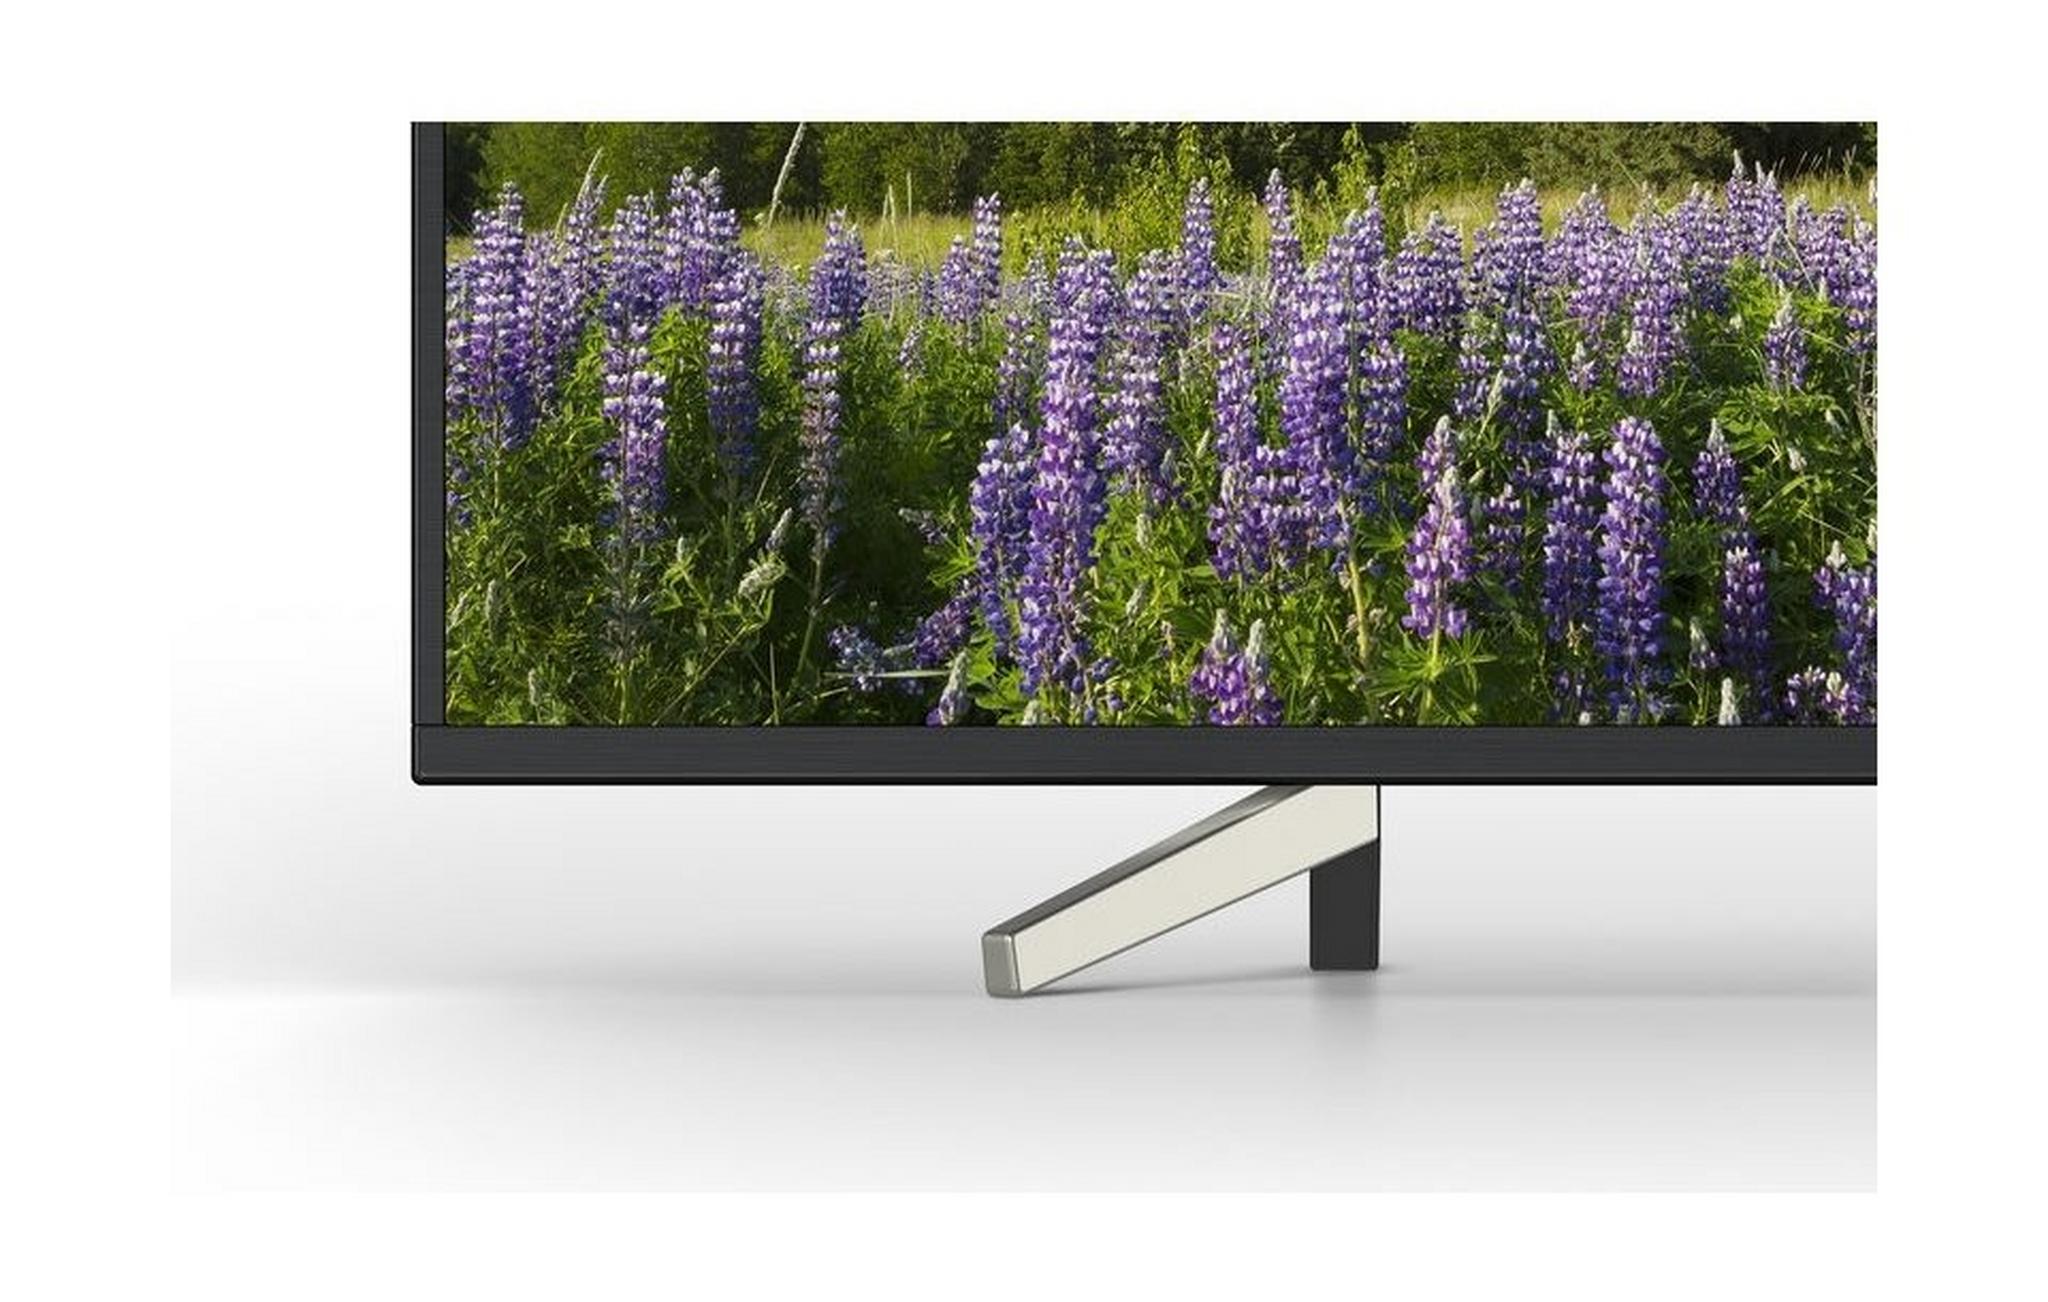 Sony 43 inch UHD SMART LED TV - KD-43X7000F